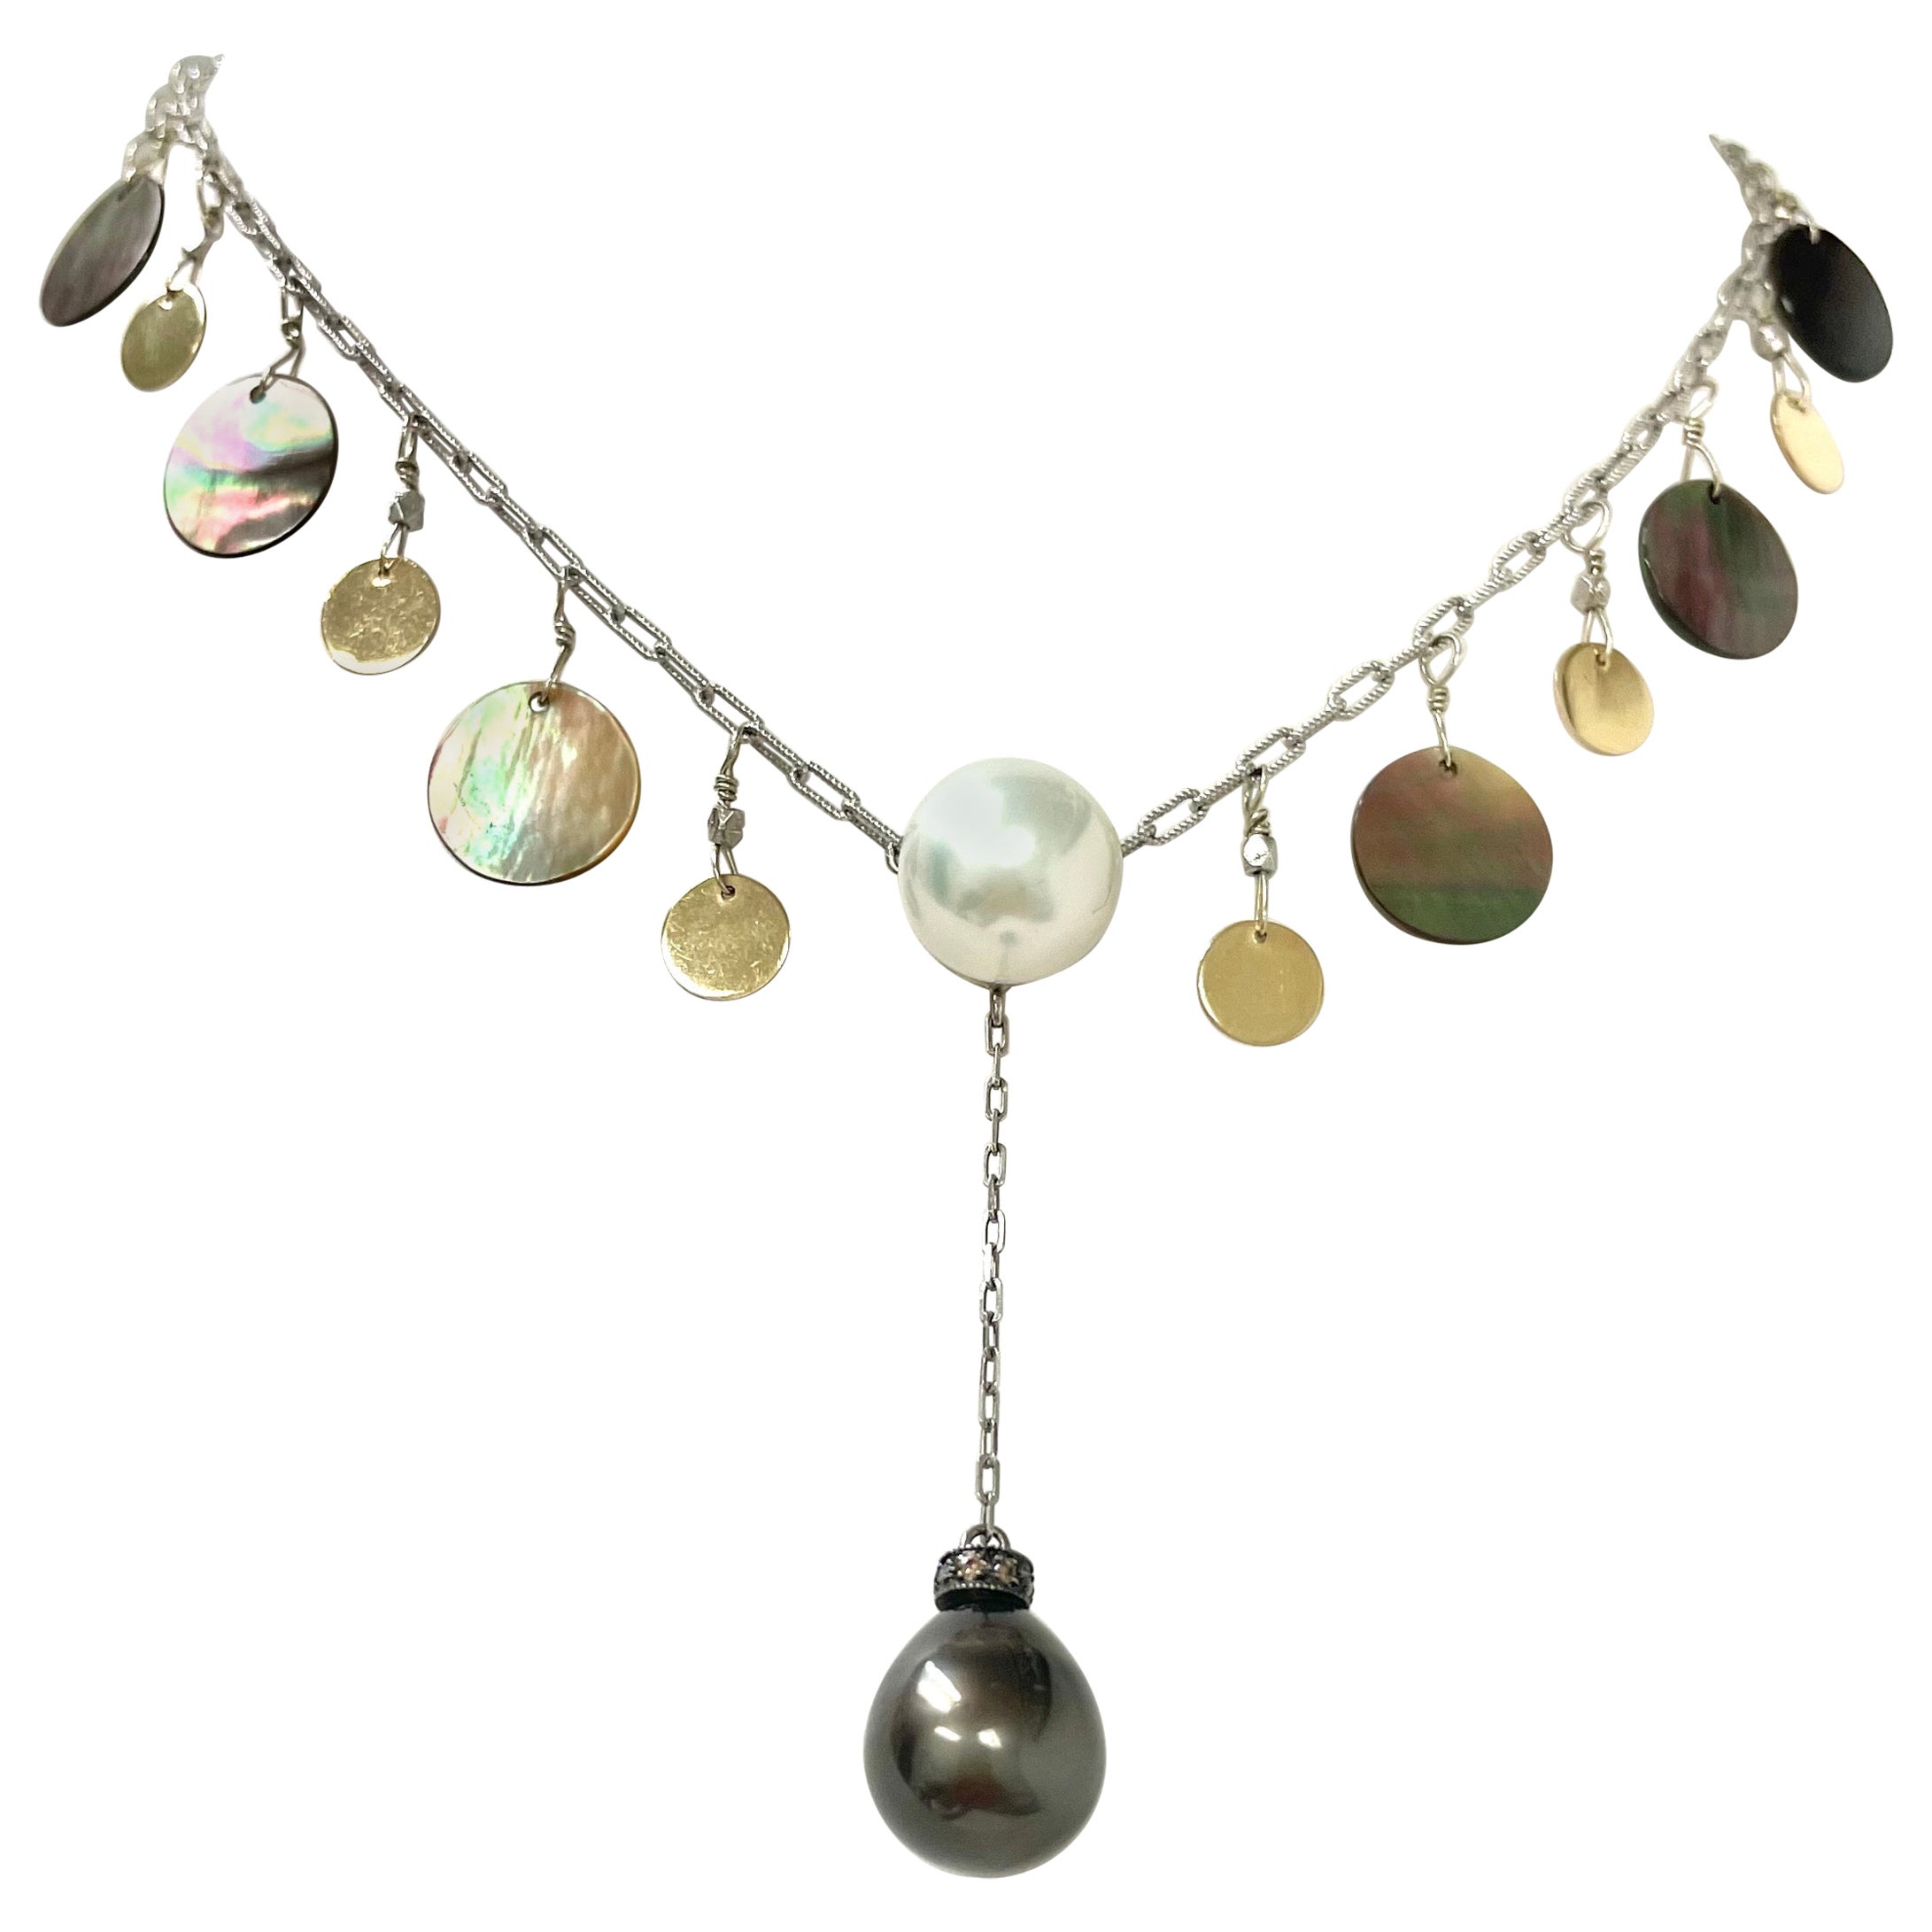  Collier de perles des mers du Sud avec perles de Tahiti et nacre